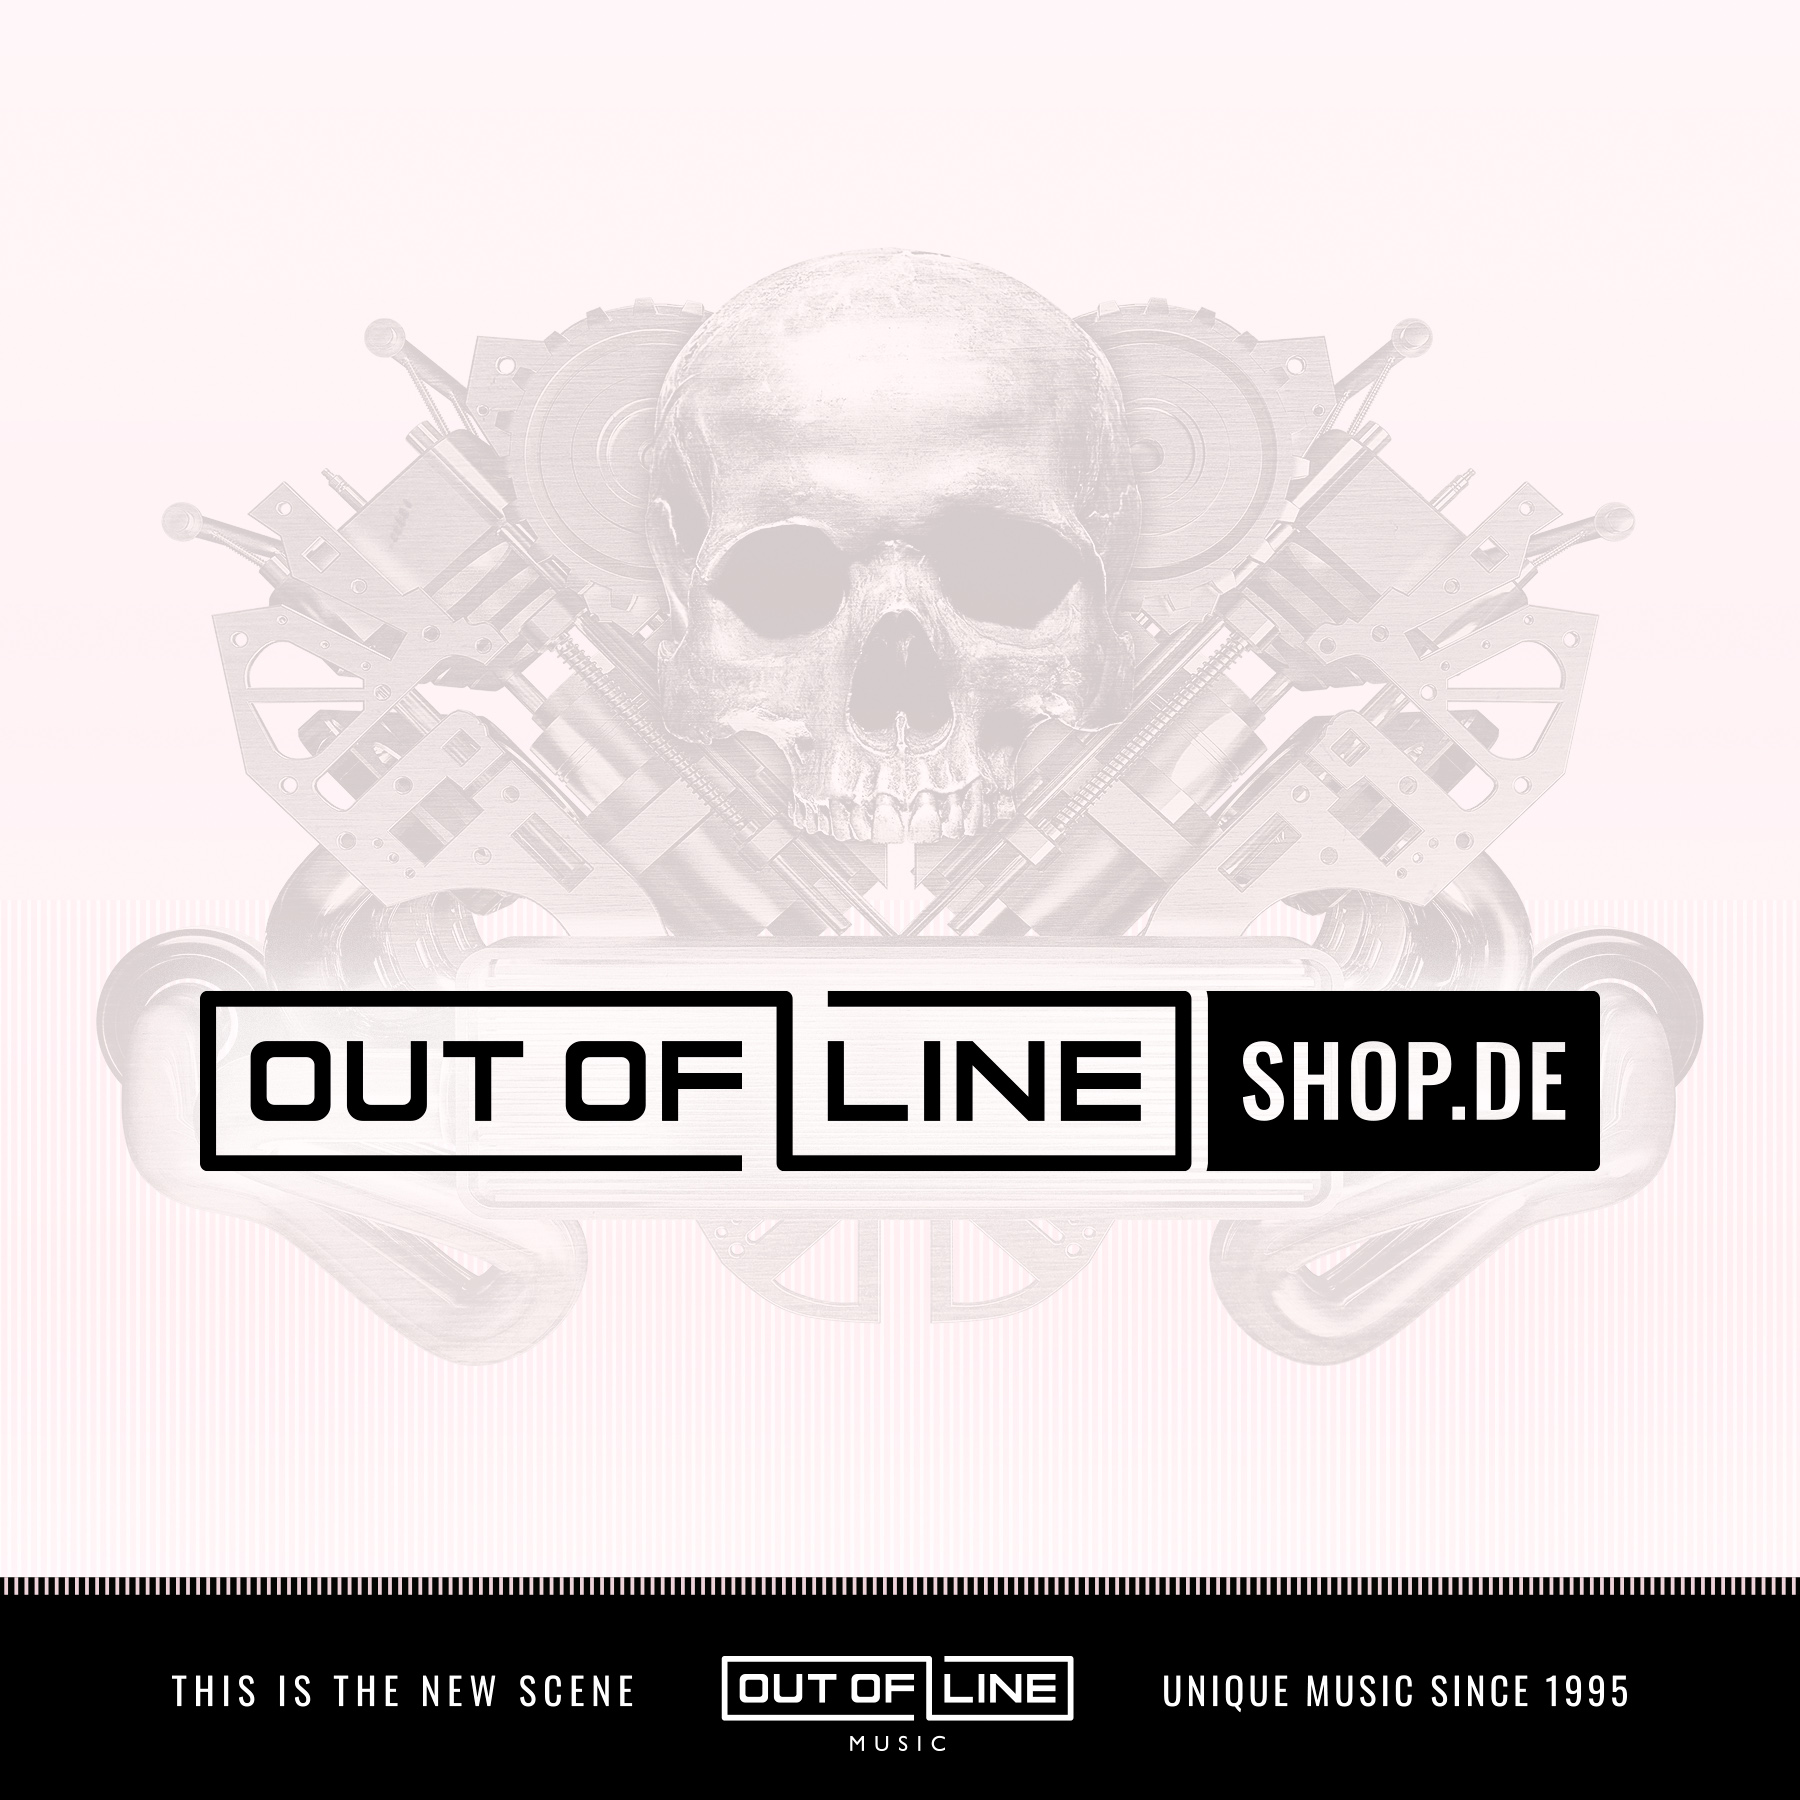 Out of Line Shop Out Of Line Shop Out of Line Shop